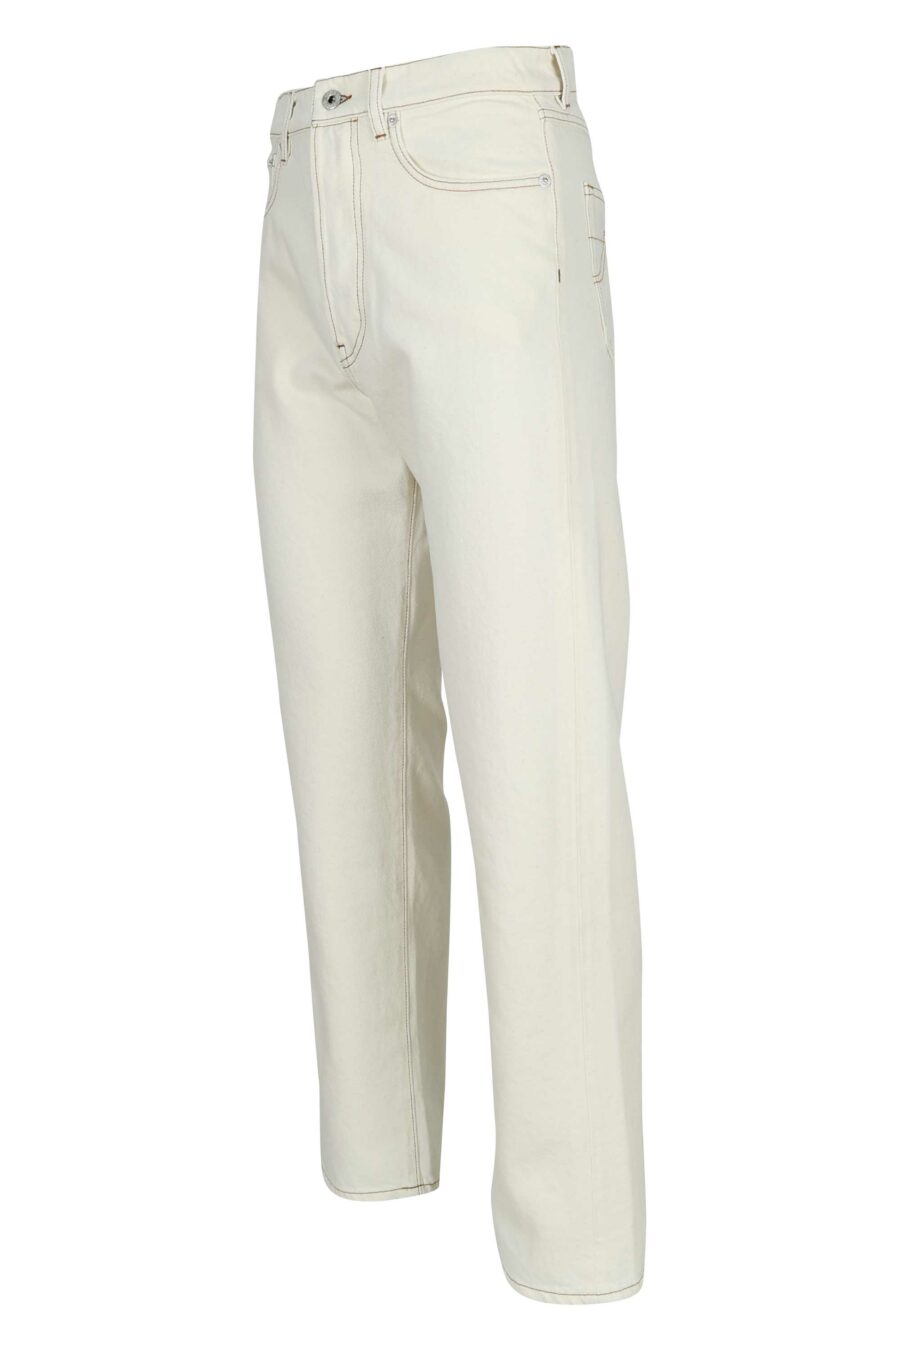 Pantalón vaquero blanco con logo "k" - 3612230591813 1